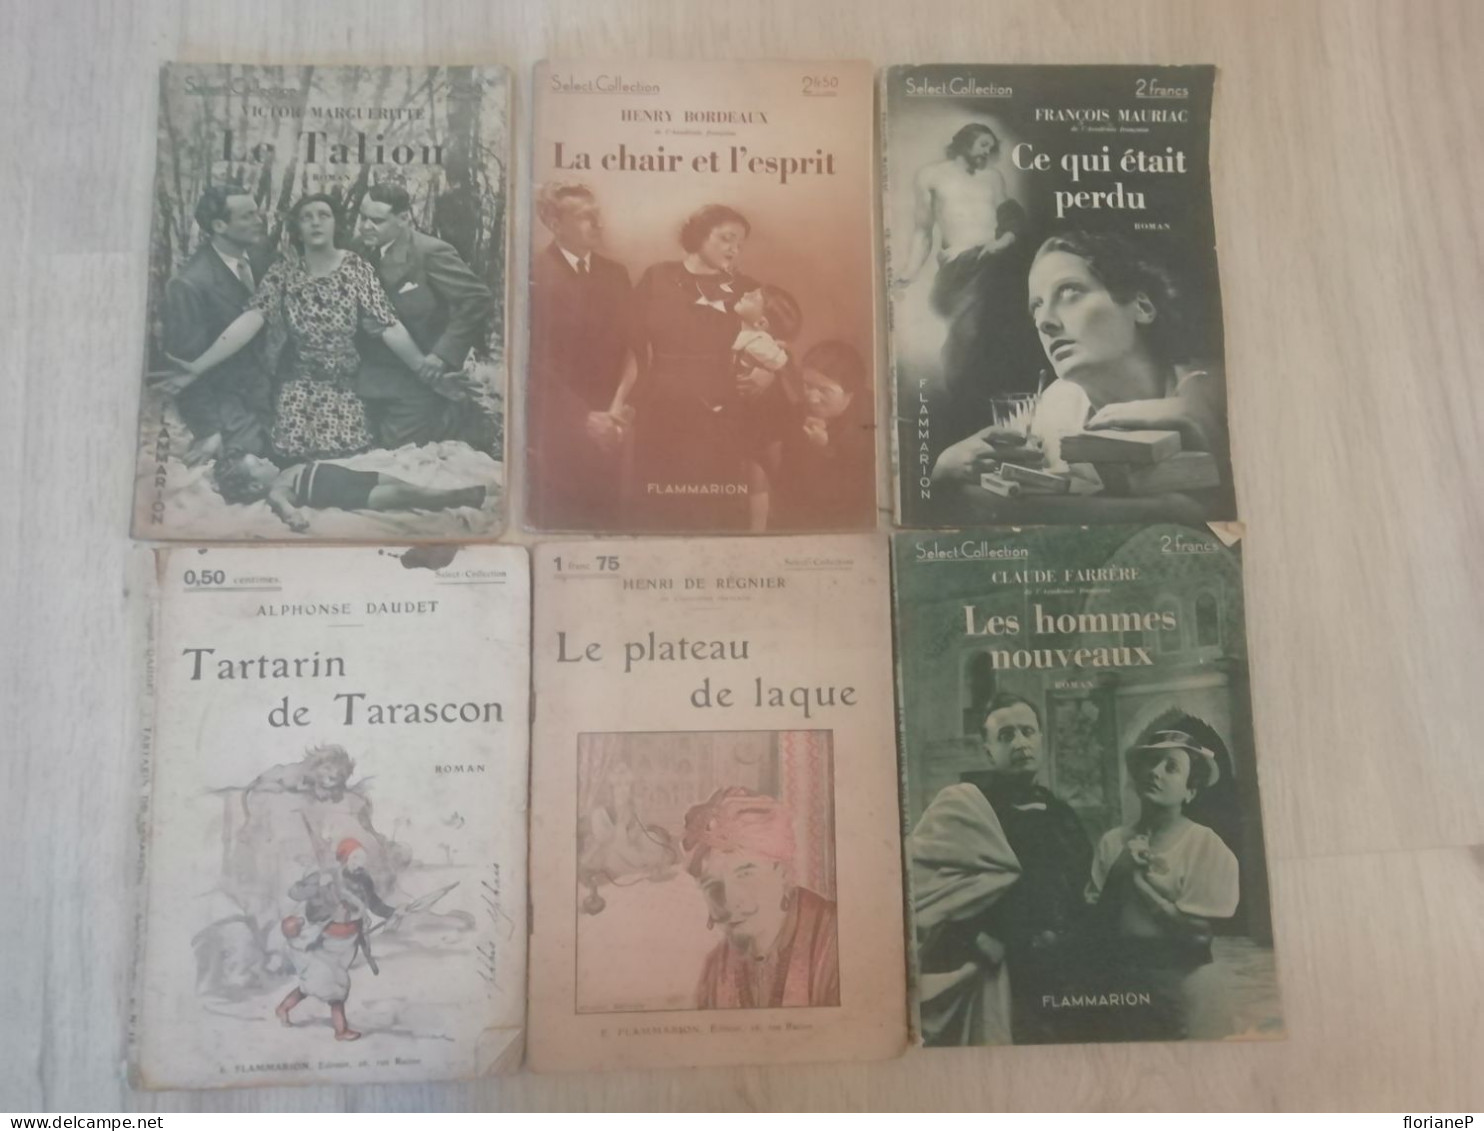 Select-Collection - Flammarion - Auteurs Classiques